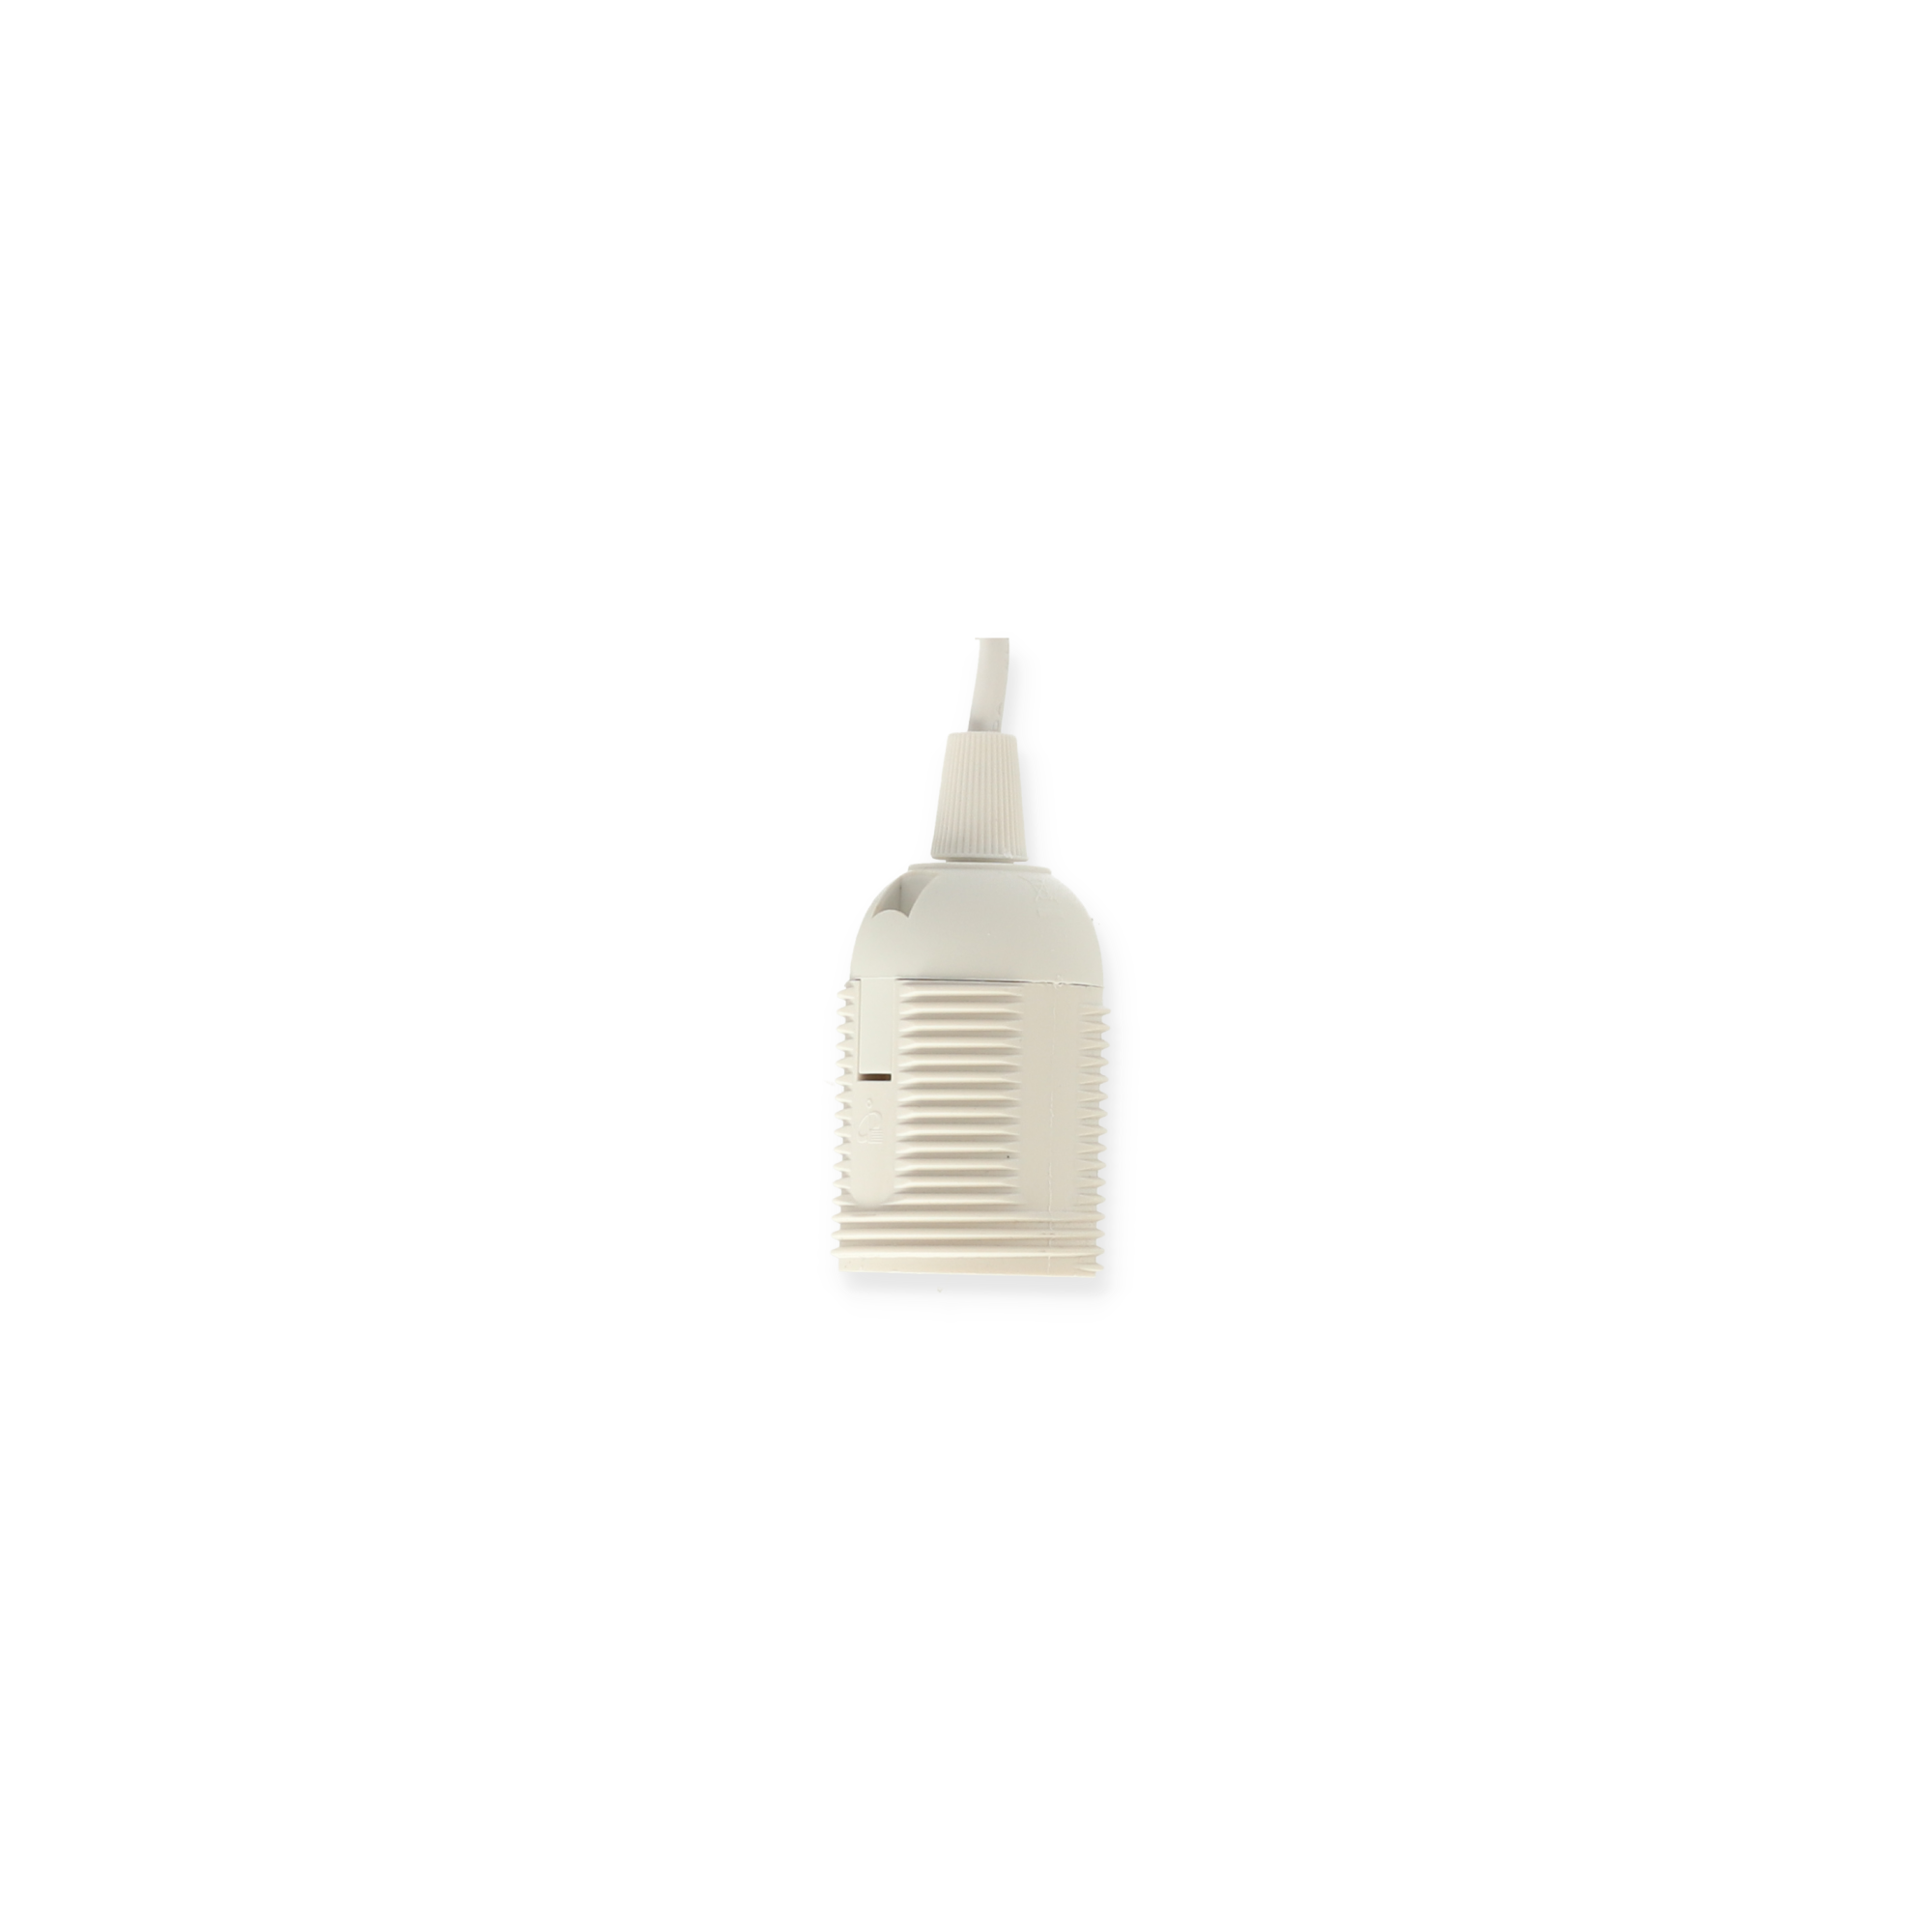 Lampenanschluss mit Schalter weiß E14 3 m + product picture